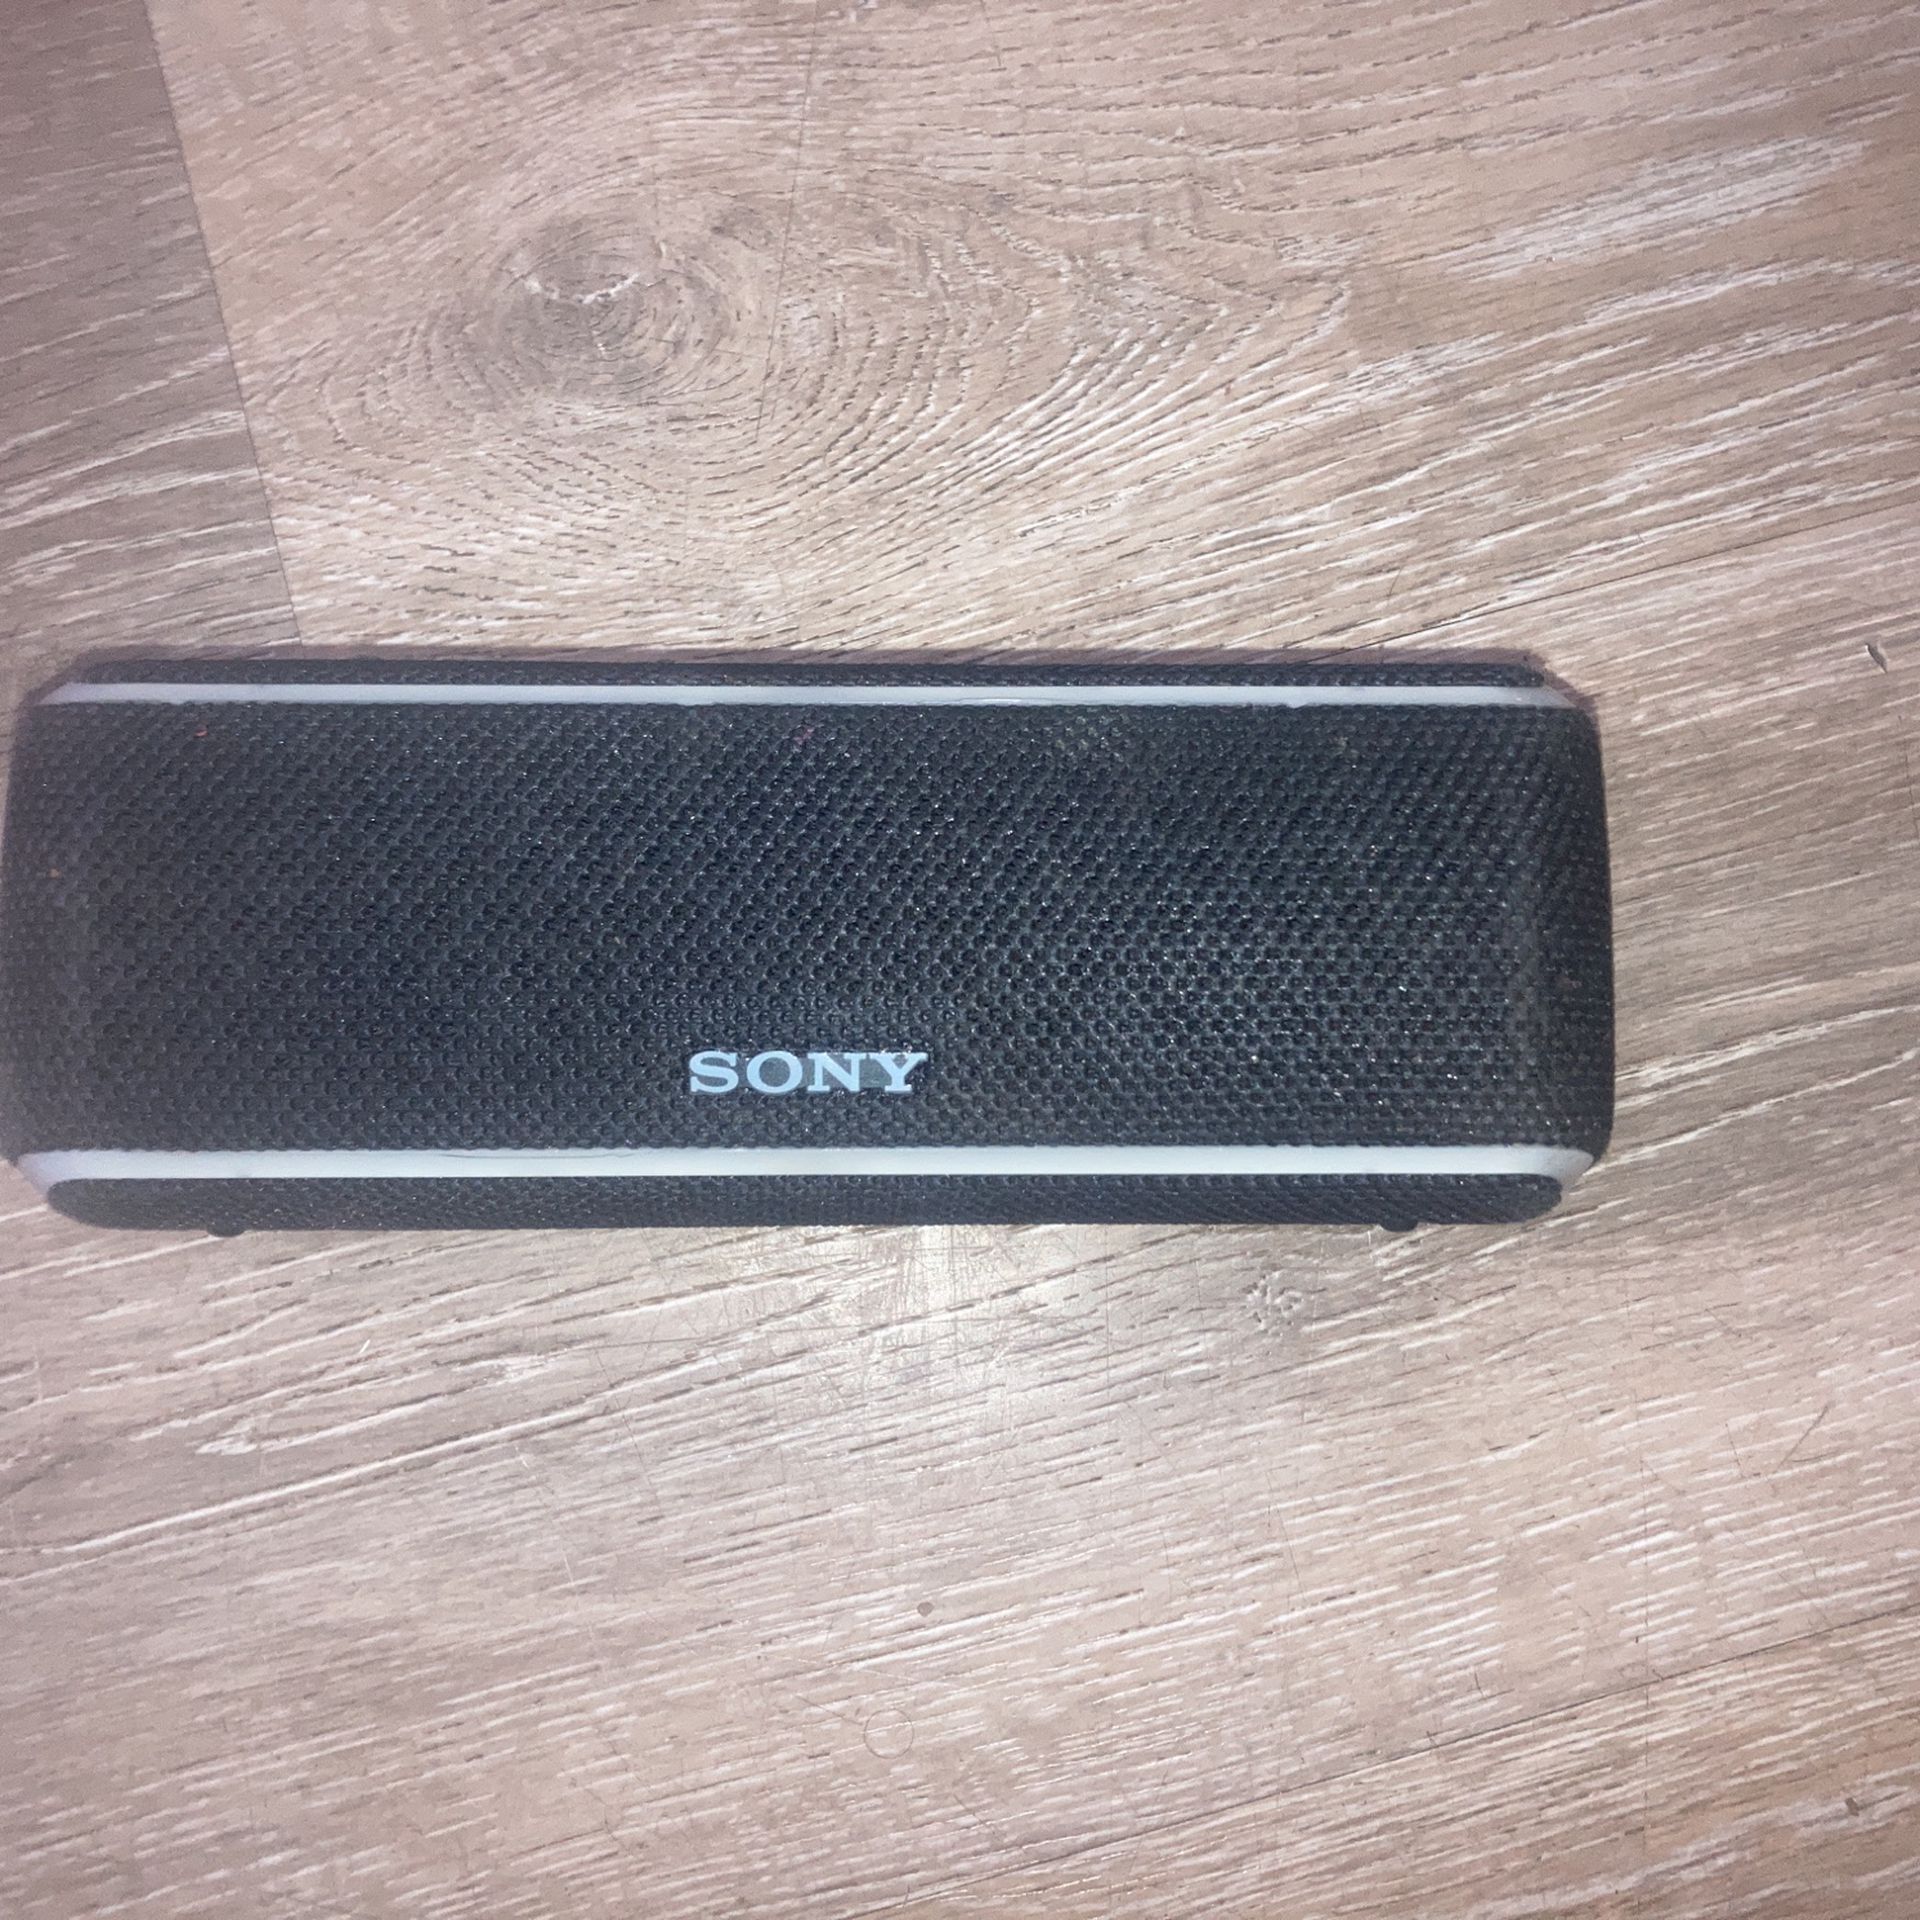 Sony Blue Tooth Speaker Loud 